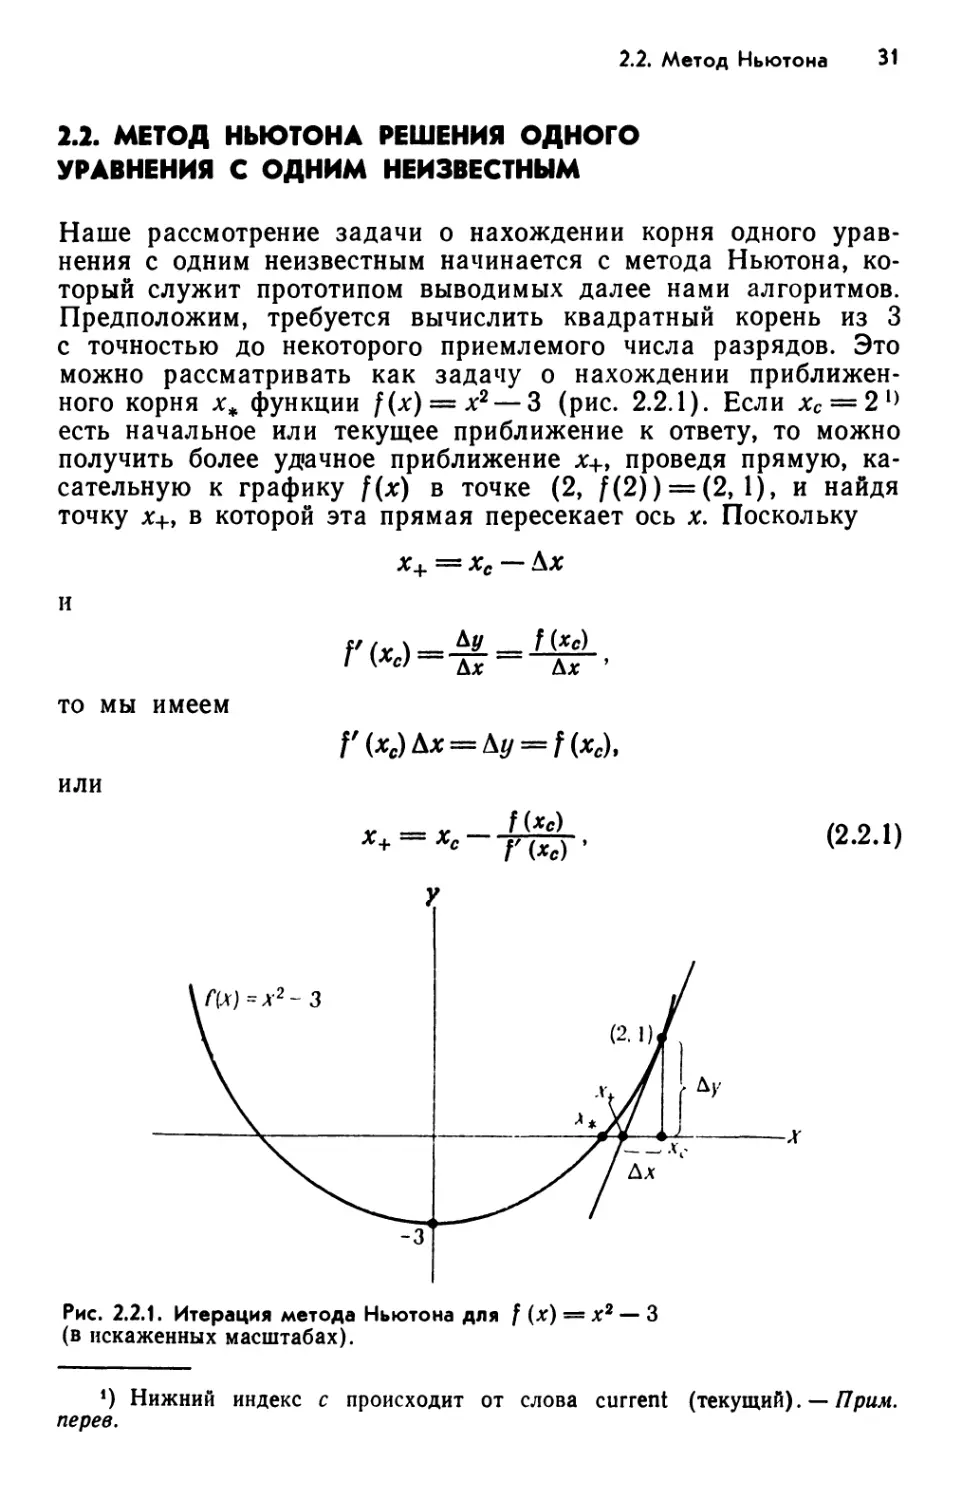 2.2. Метод Ньютона решения одного уравнения с одним неизвестным